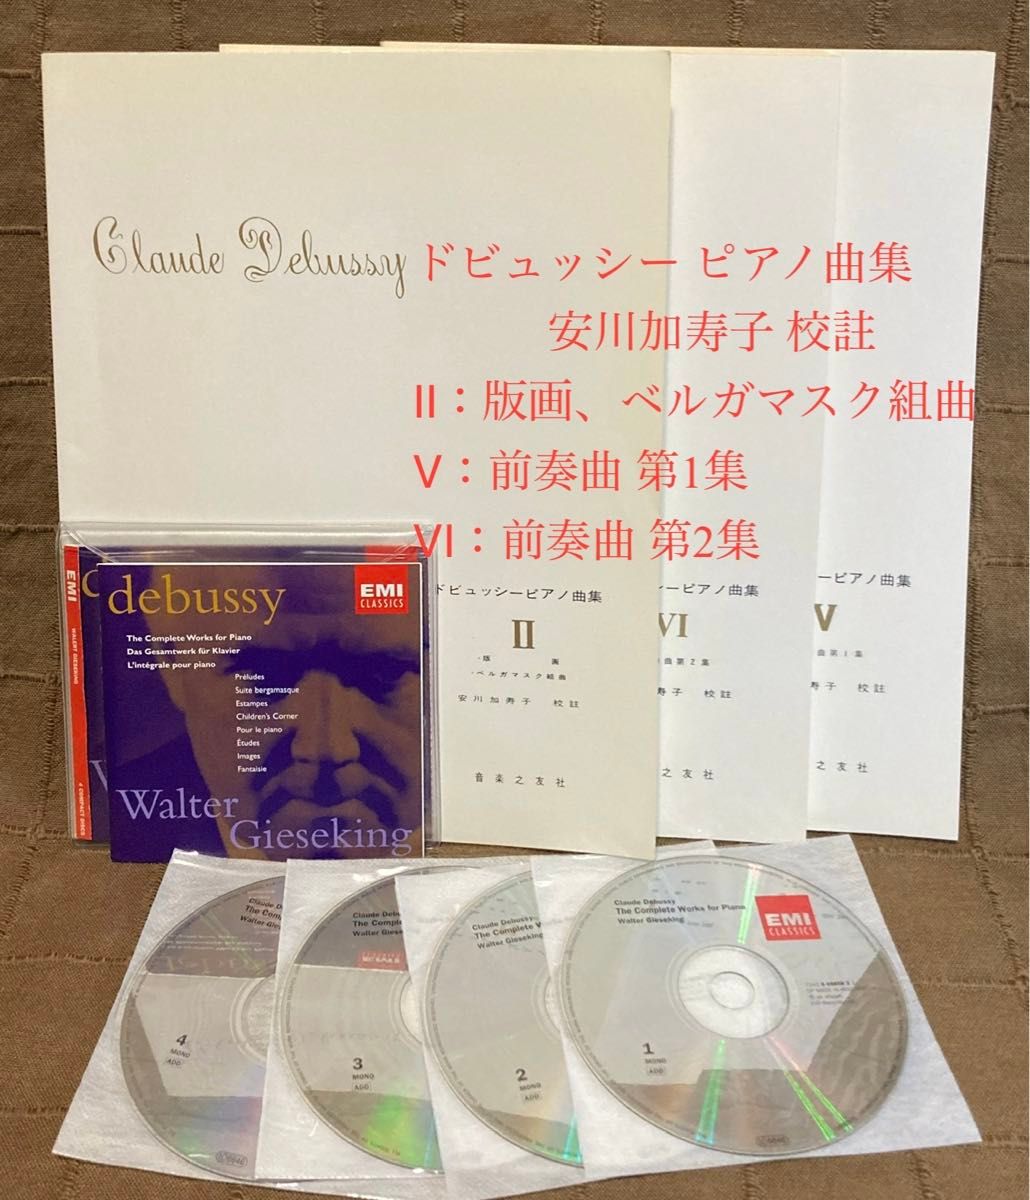 ピアノ楽譜 ドビュッシー ピアノ曲集 Ⅱ Ⅴ Ⅵ + 5CD ギーゼキング